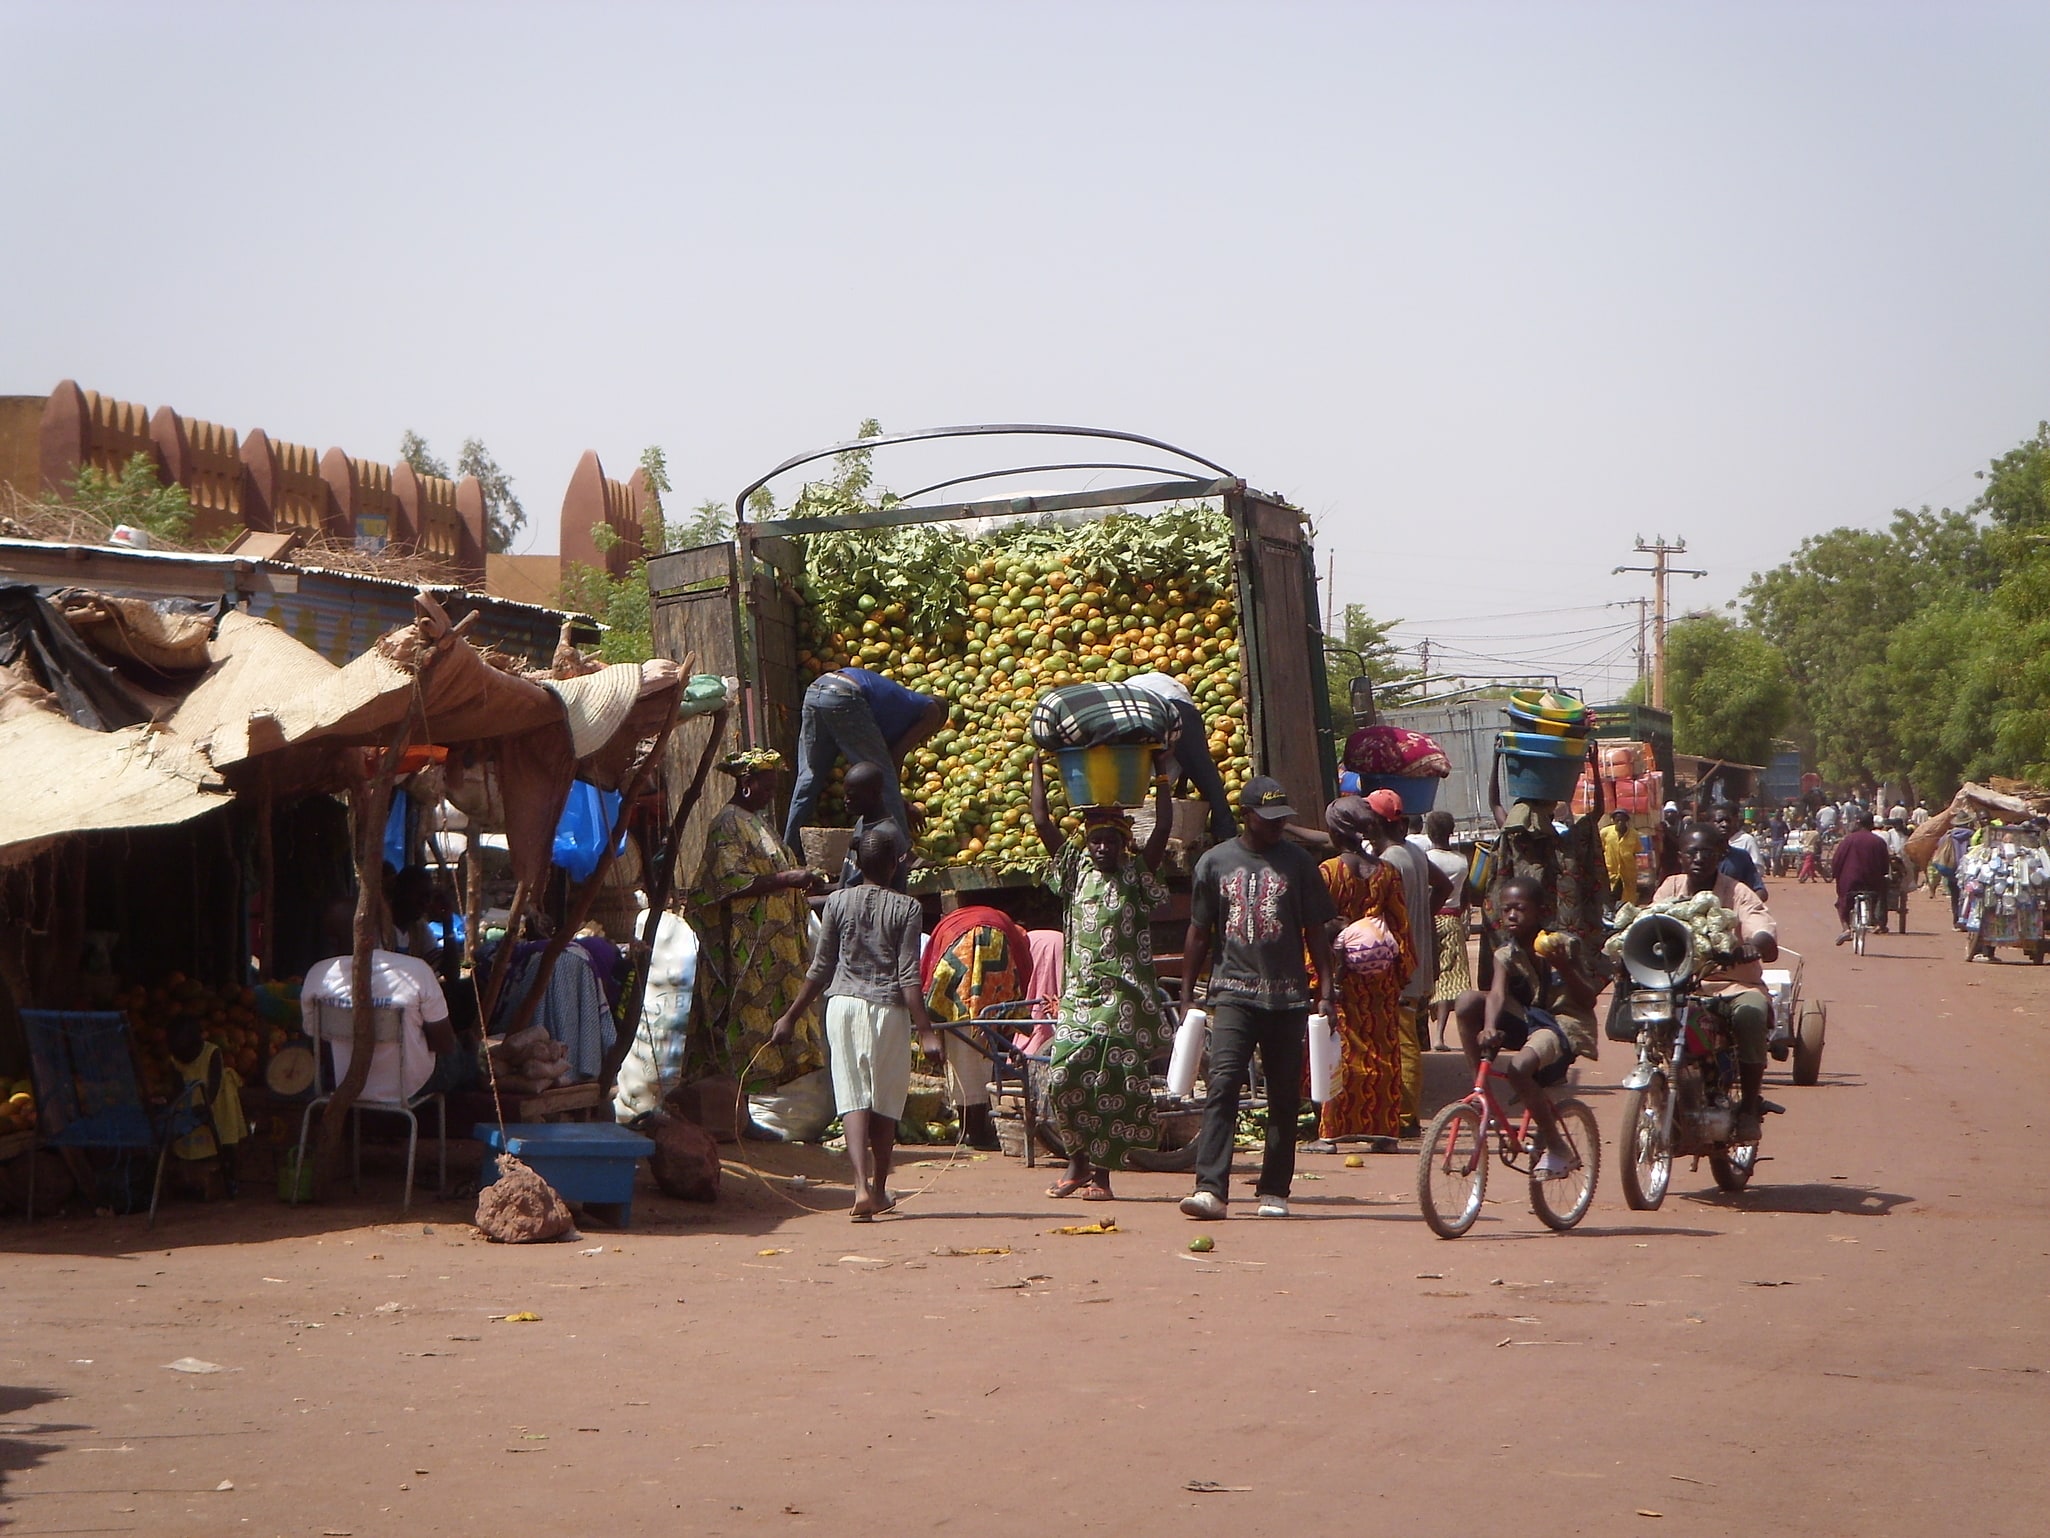 Mopti, Mali